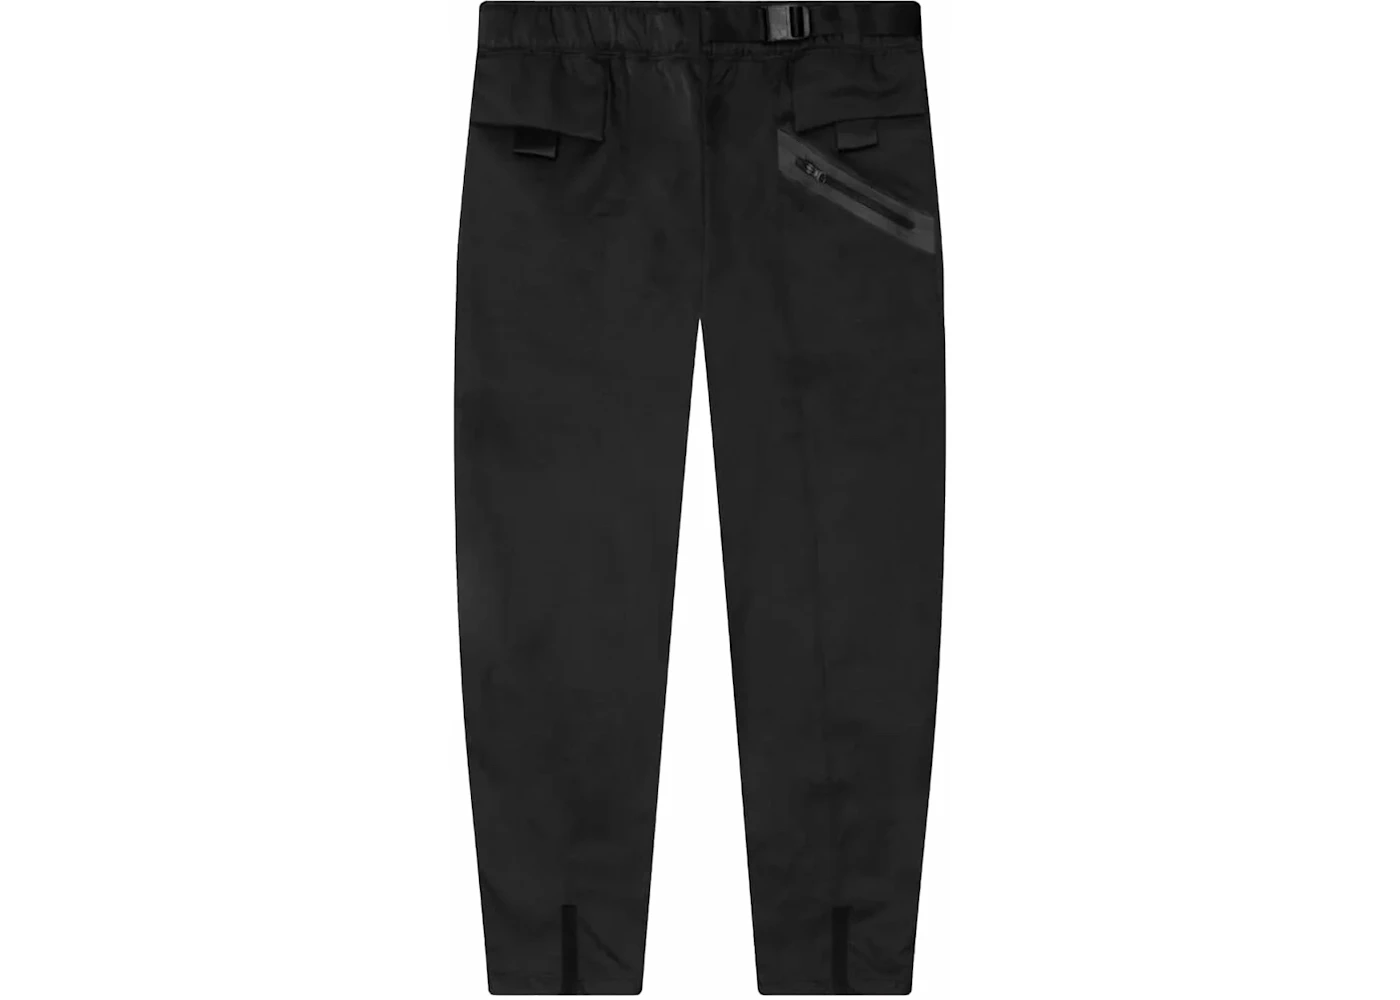 Nike Sportswear Women's Tech Pack Woven Pants Black - FW23 - US